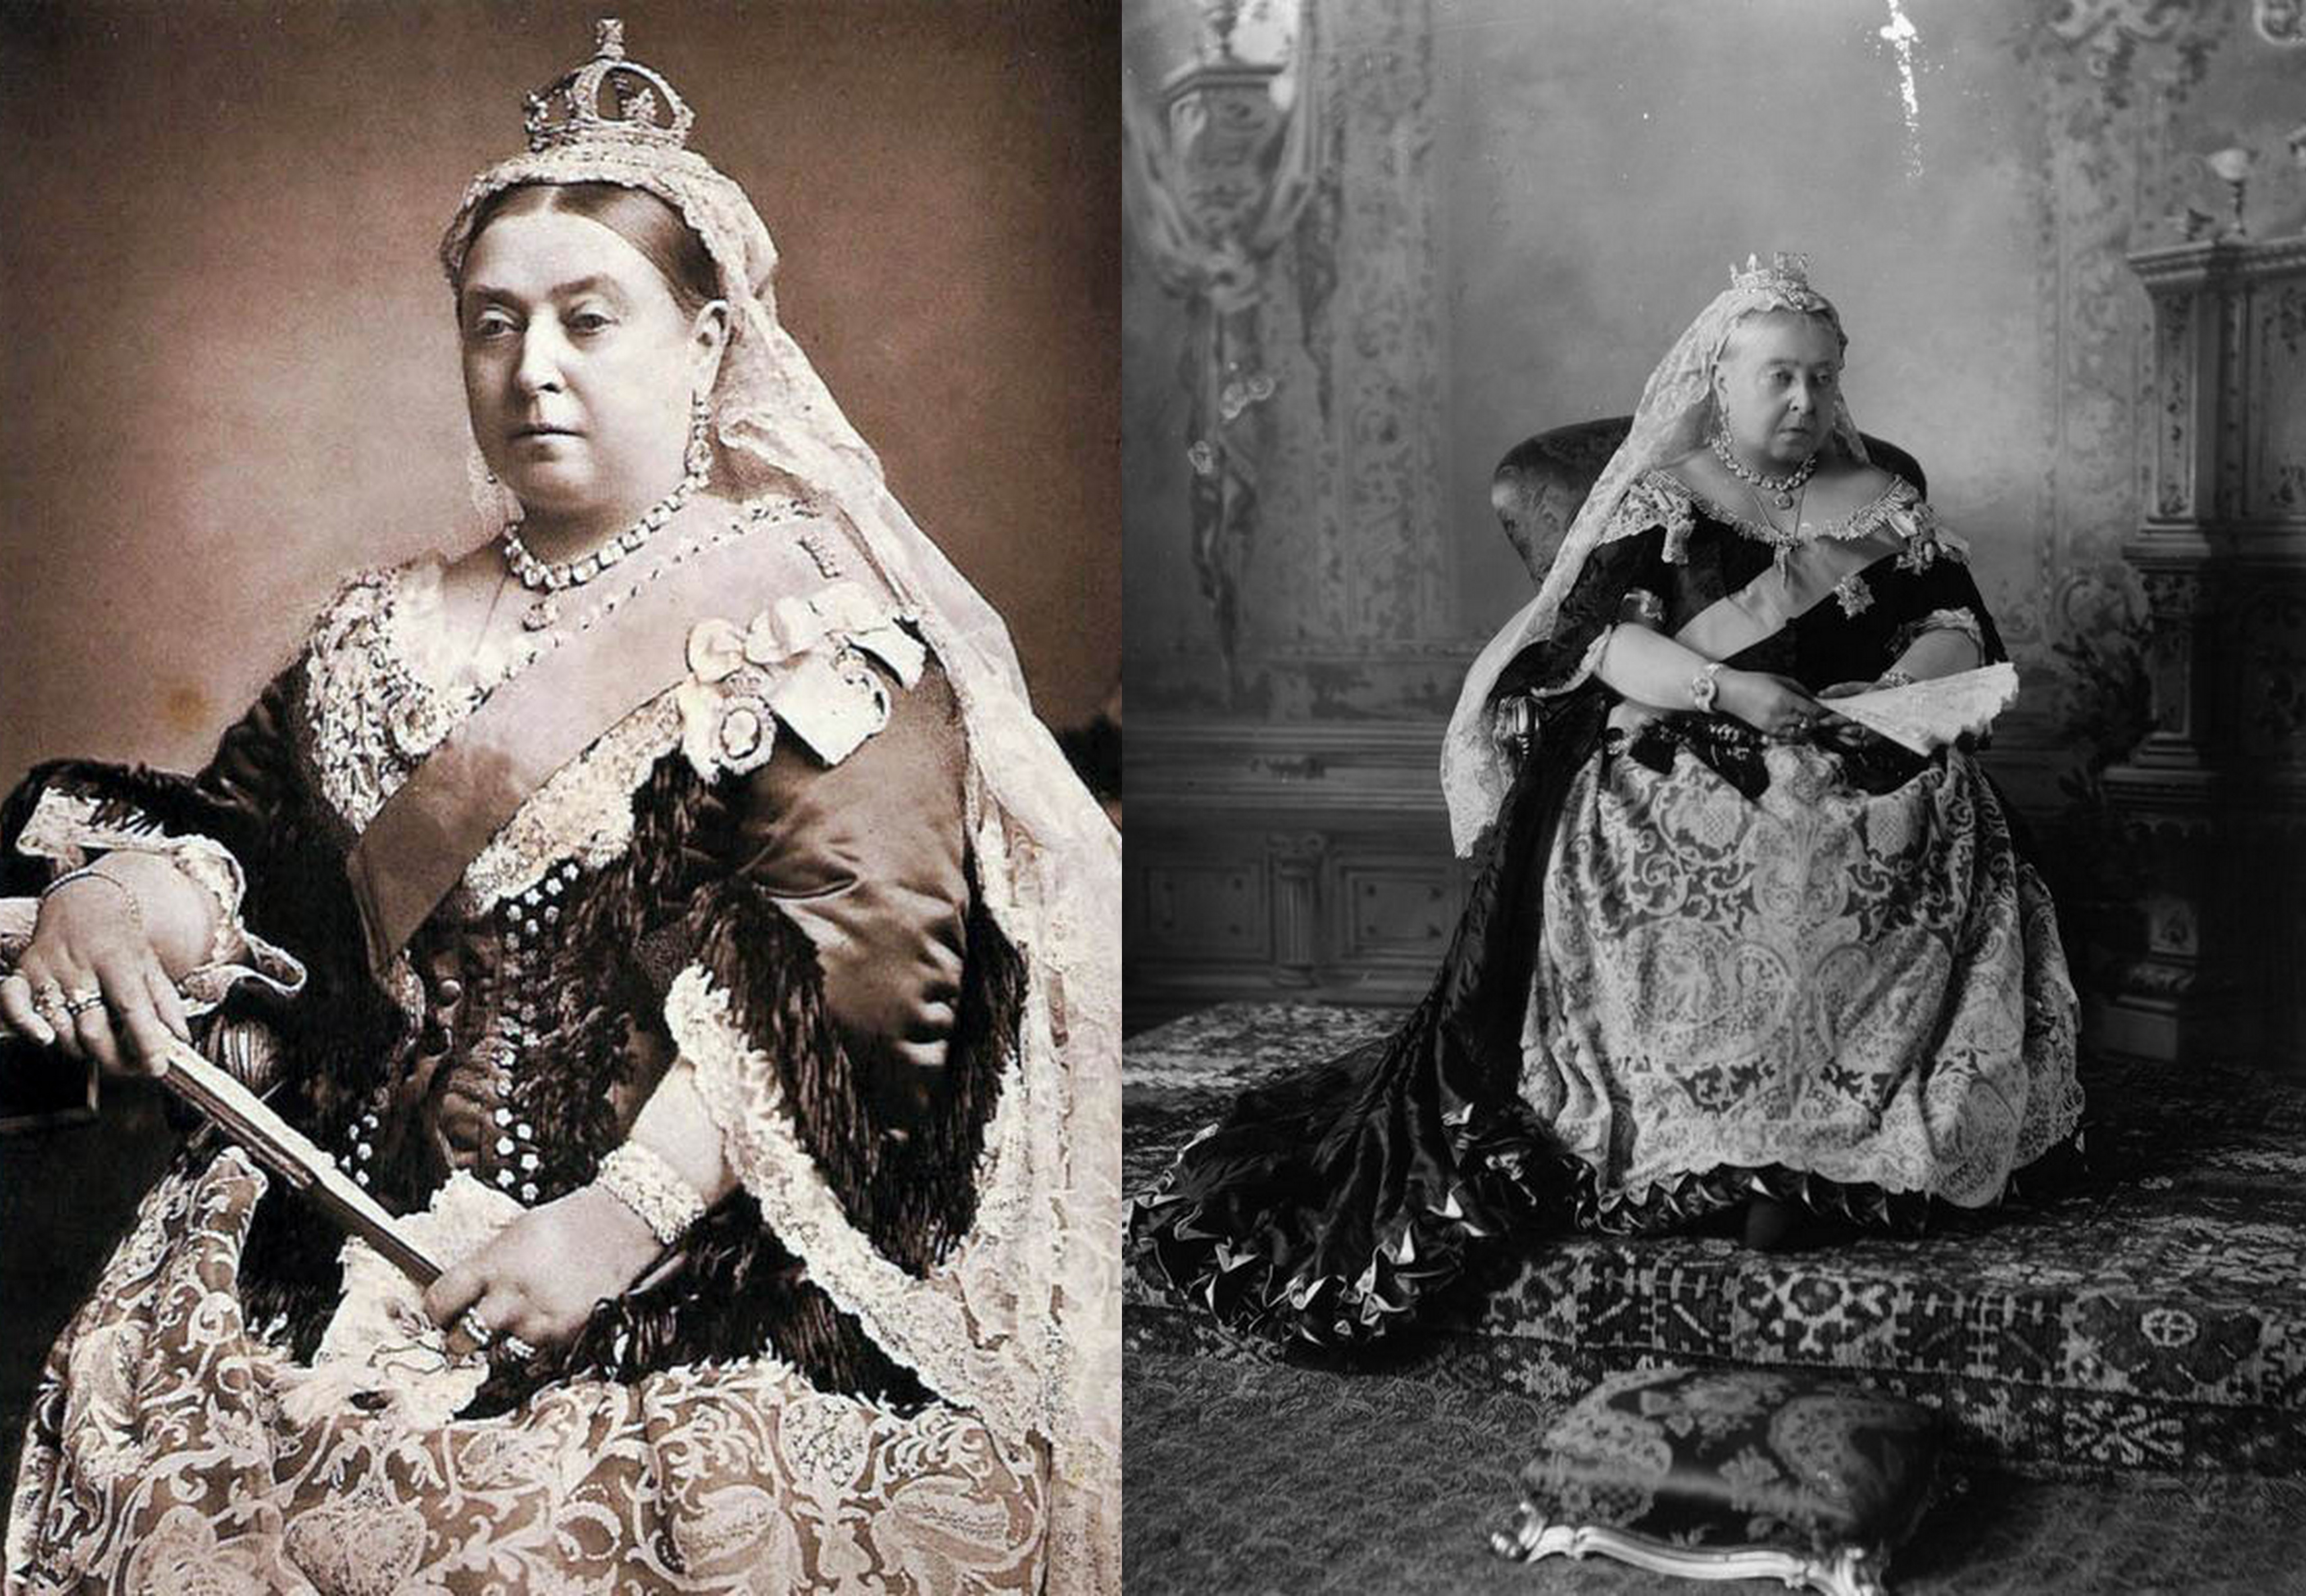 Subastan álbum con recuerdos de la reina Victoria por 30.000 euros